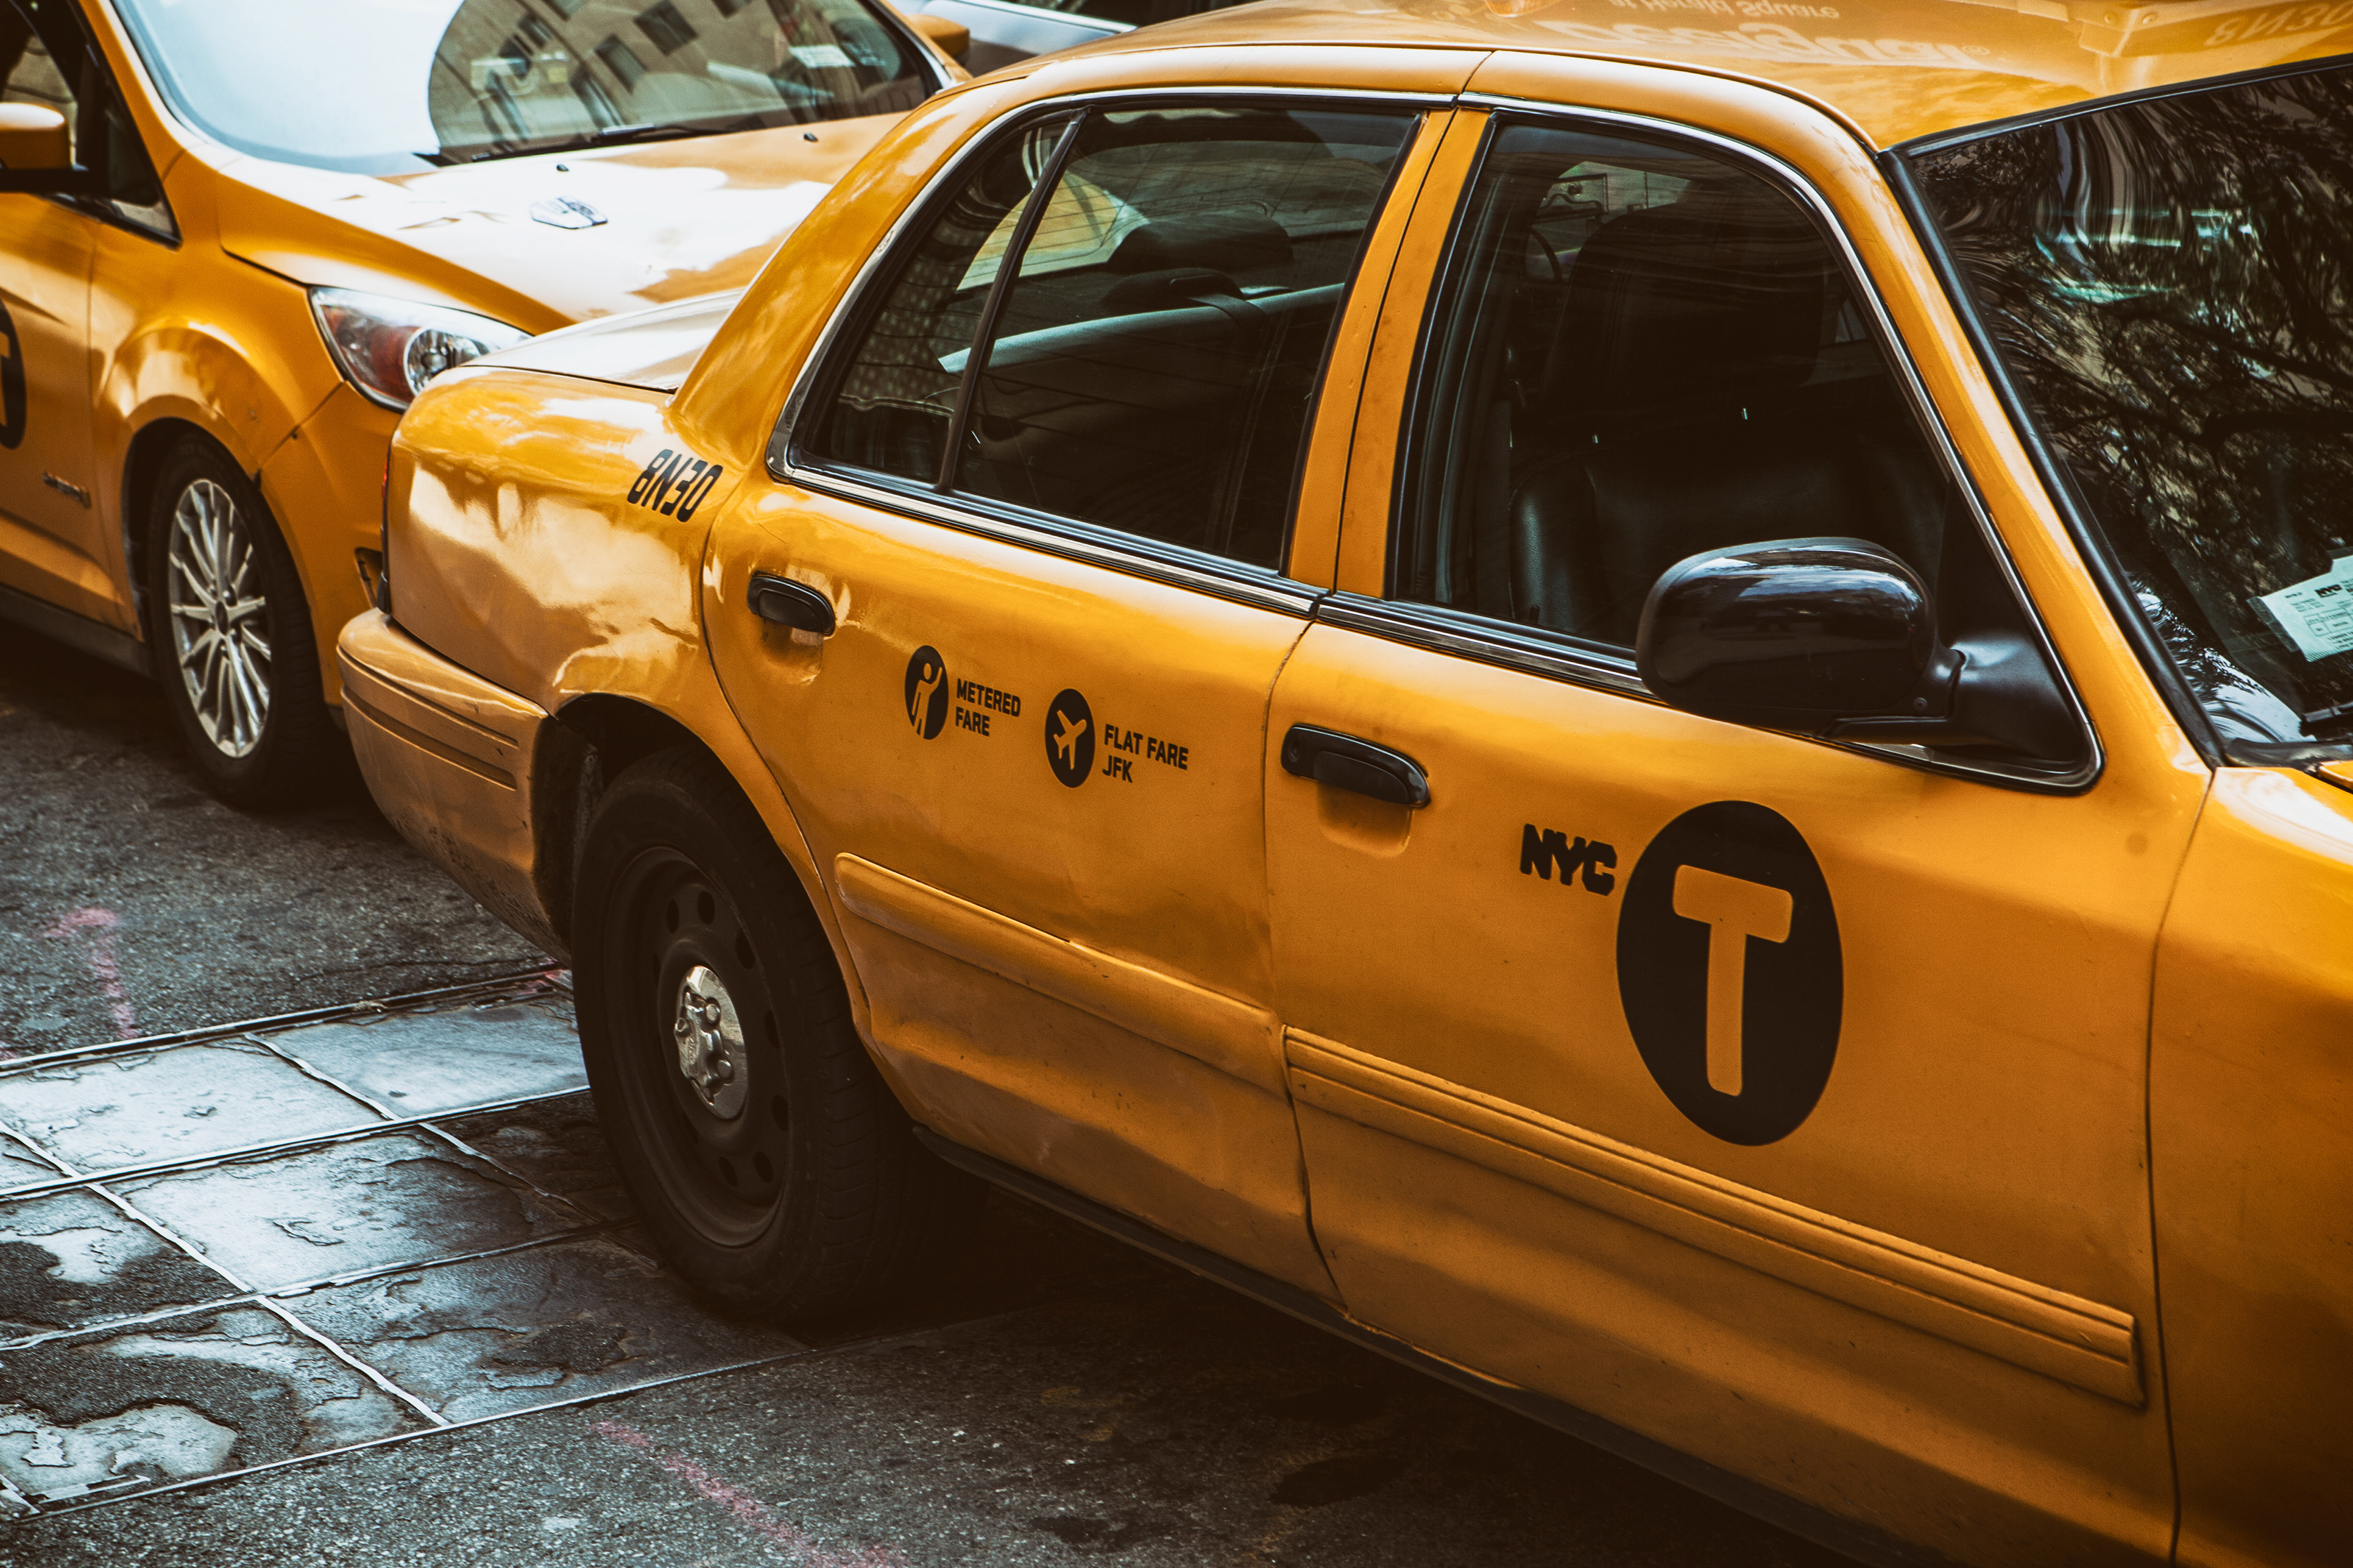 Скачать обои бесплатно Тачки (Cars), Такси, Нью Йорк, Машины картинка на рабочий стол ПК